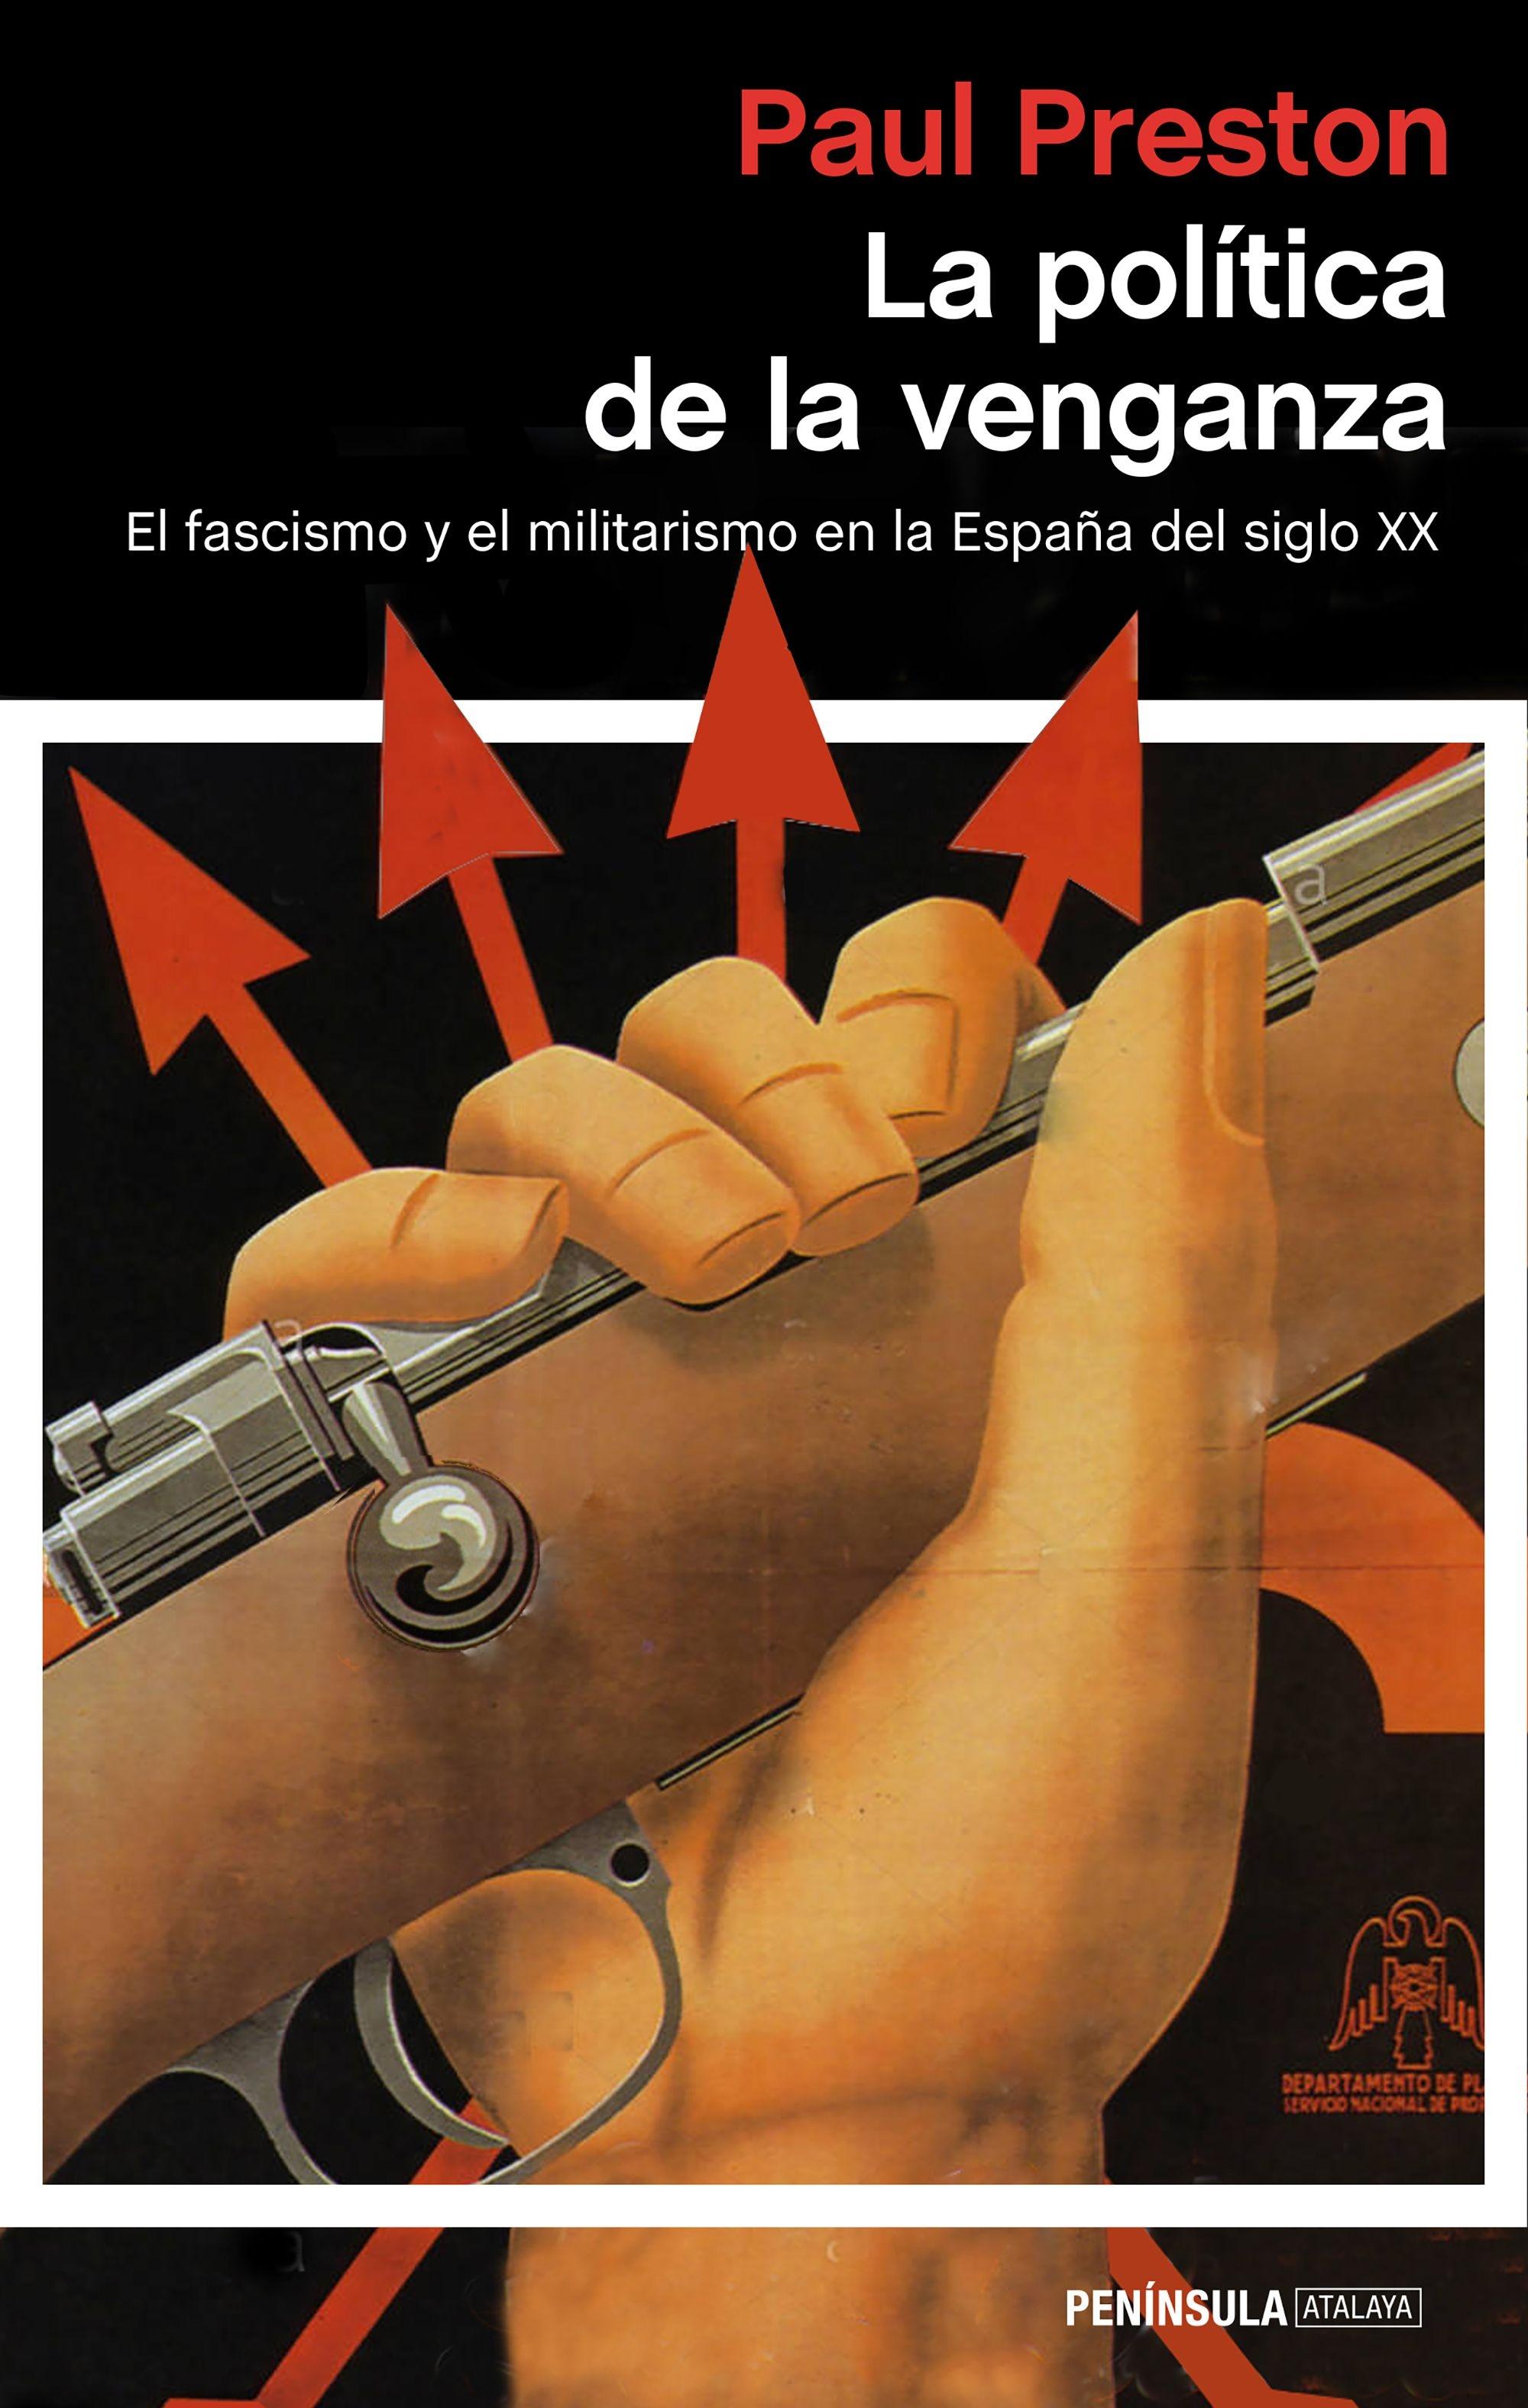 La política de la venganza "El fascismo y el militarismo en la España del siglo XX"